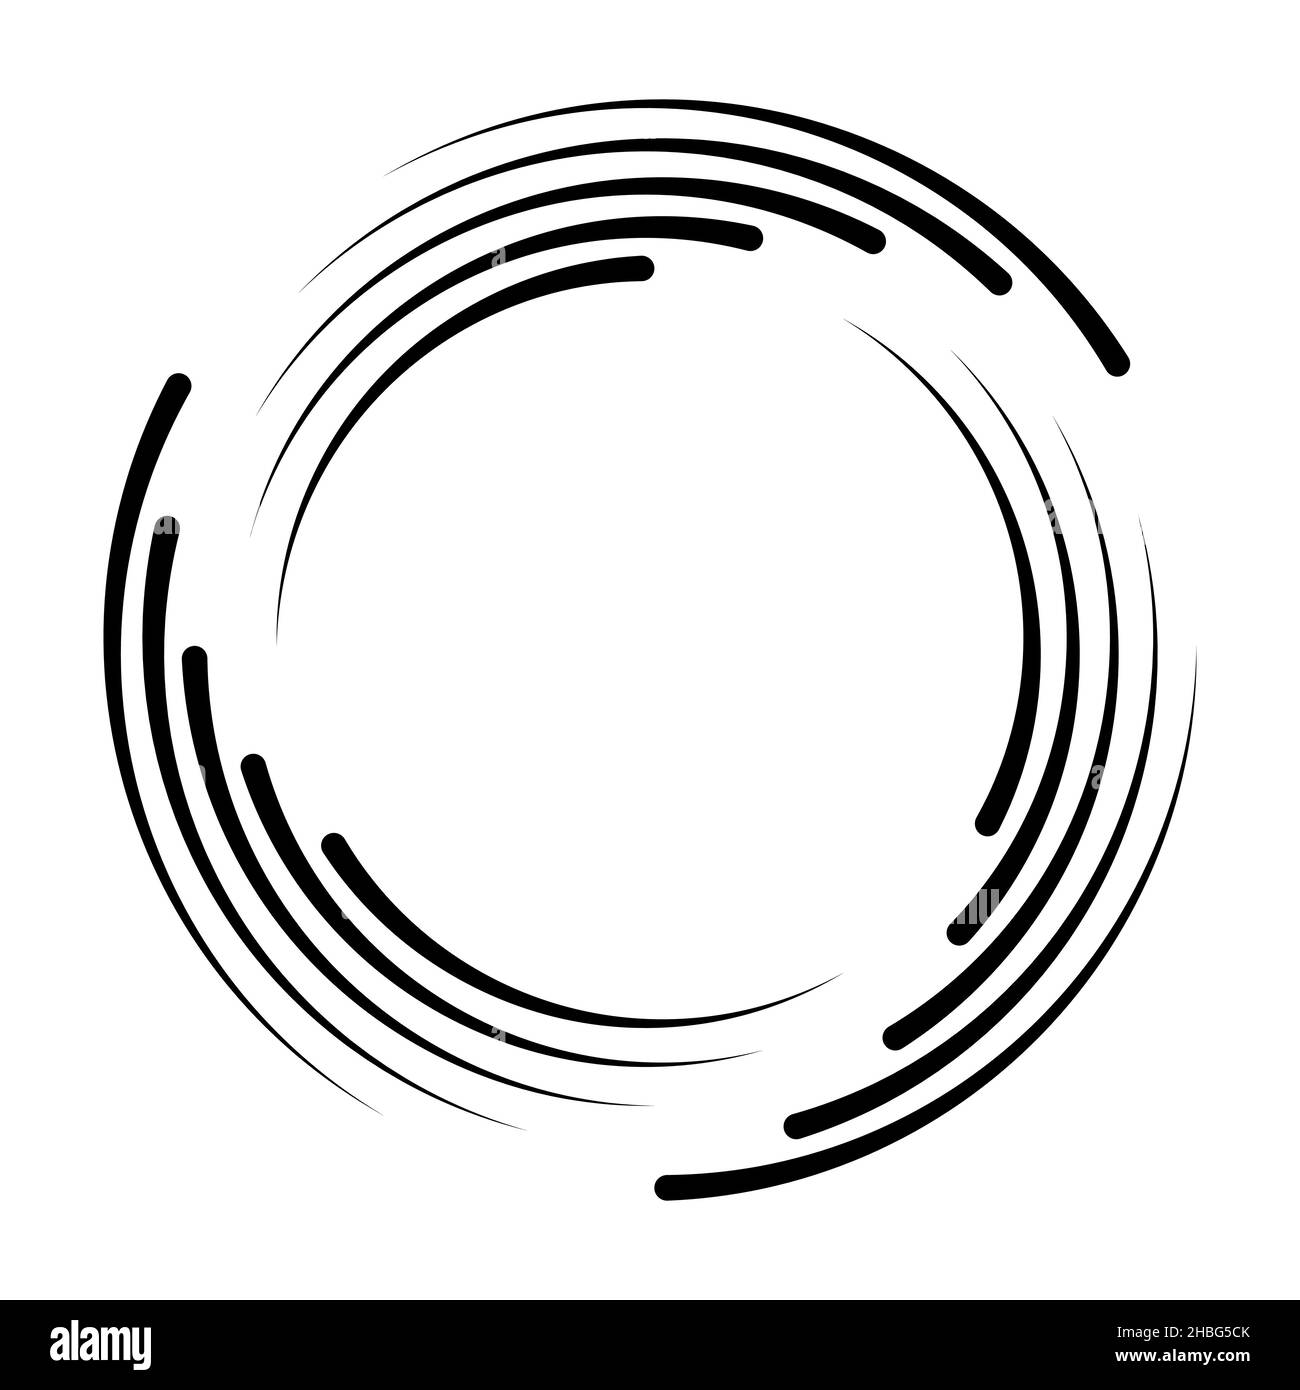 Schwarze Geschwindigkeitslinien in runder Form, Wirbel für Rahmen, Turbulence Logo, Tattoo, Schild, Abbildung des Symbolbestands Stock Vektor